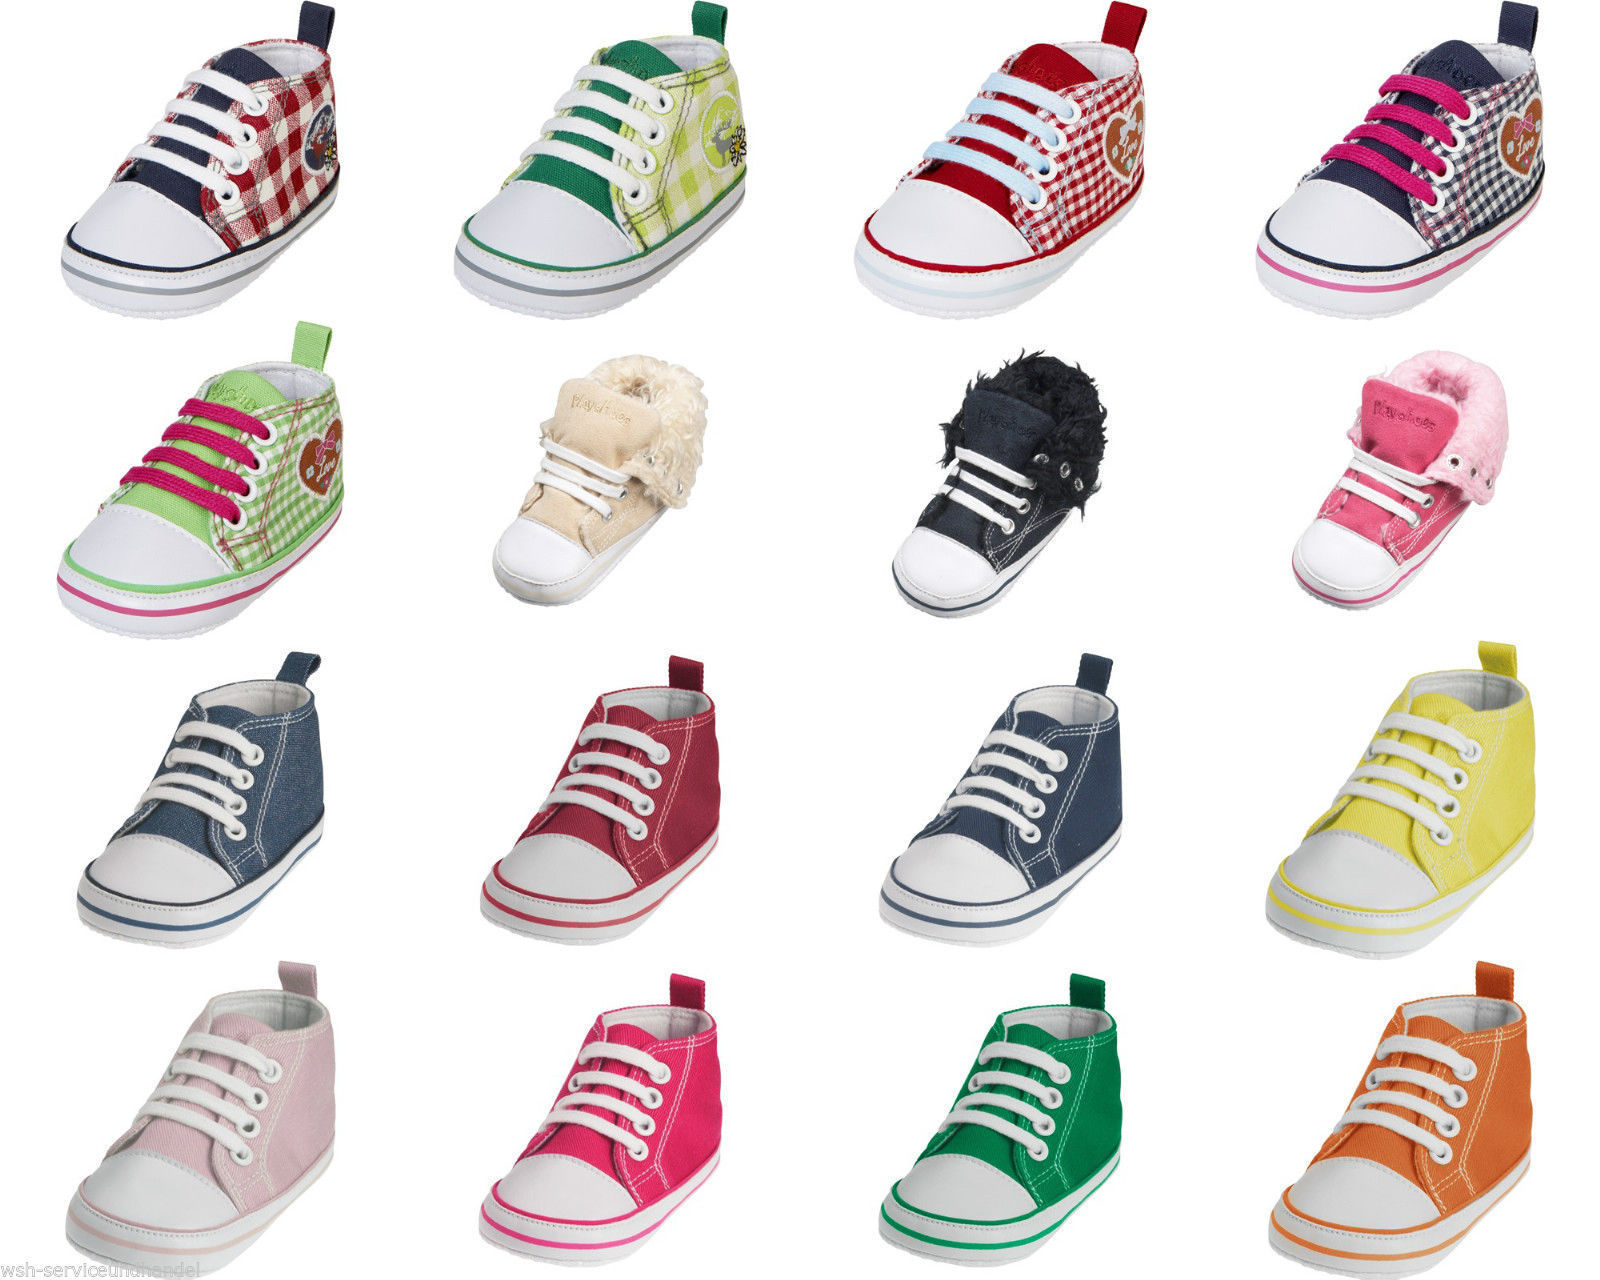 Playshoes Babyschuhe Canvas Sneaker Turnschuhe Schuhe Mädchen Jungen Gr. 16 -20